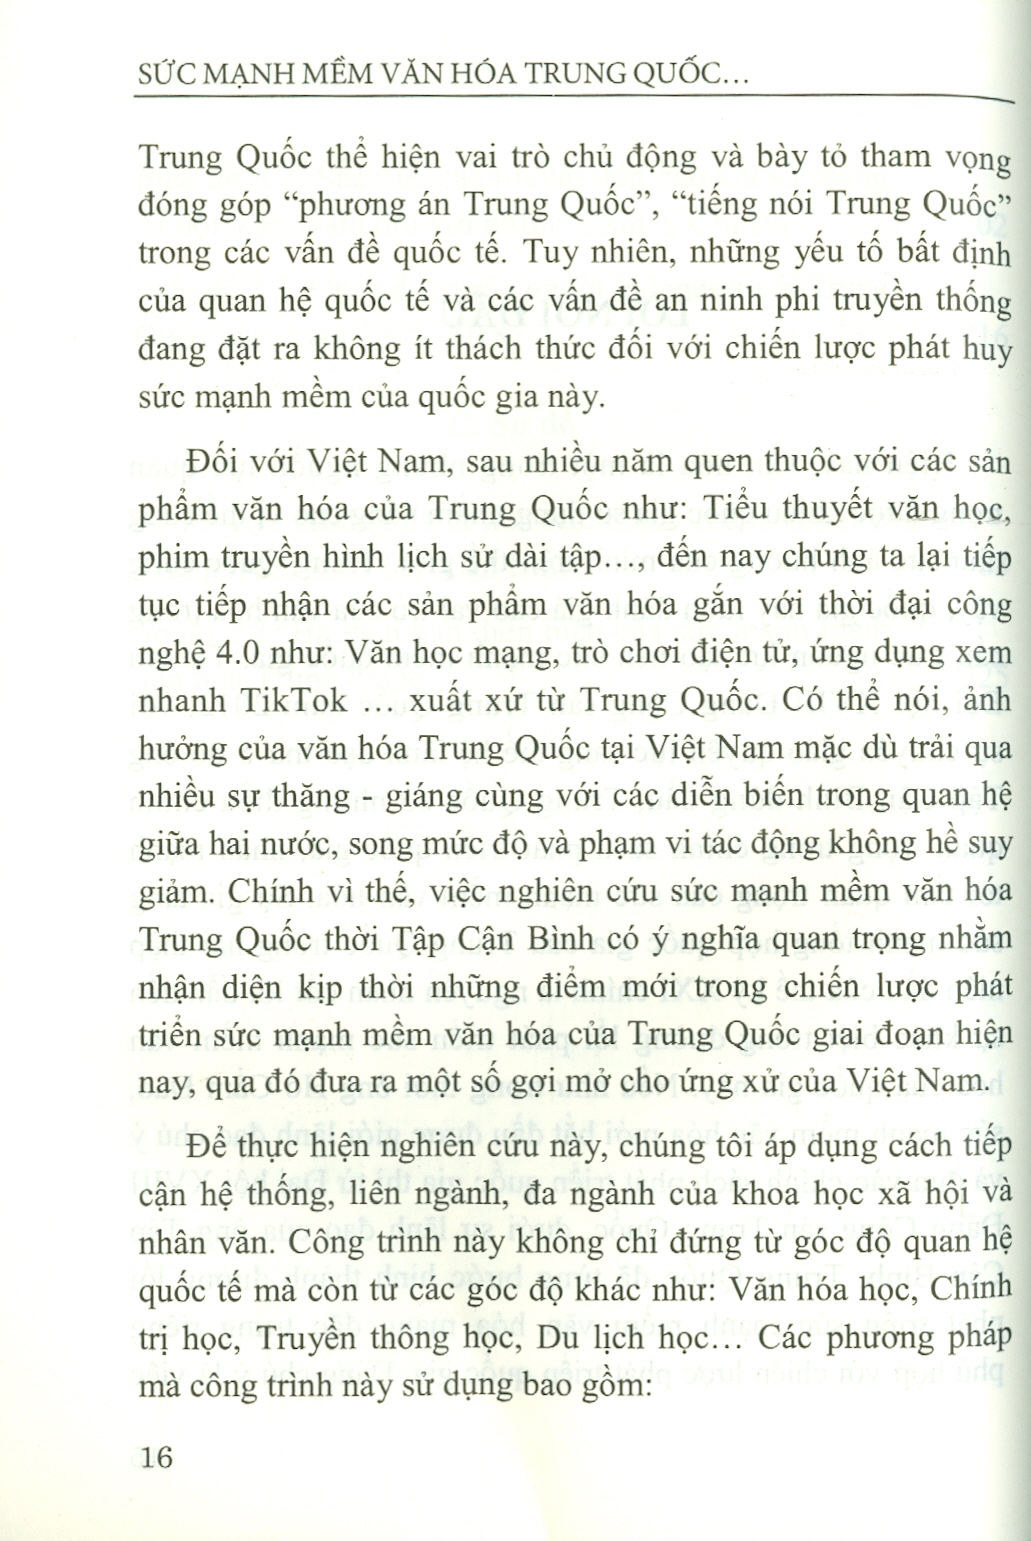 Sức Mạnh Mềm Văn Hóa Trung Quốc Thời Tập Cận Bình Và Văn Hóa Ứng Xử Của Việt Nam (Sách chuyên khảo)